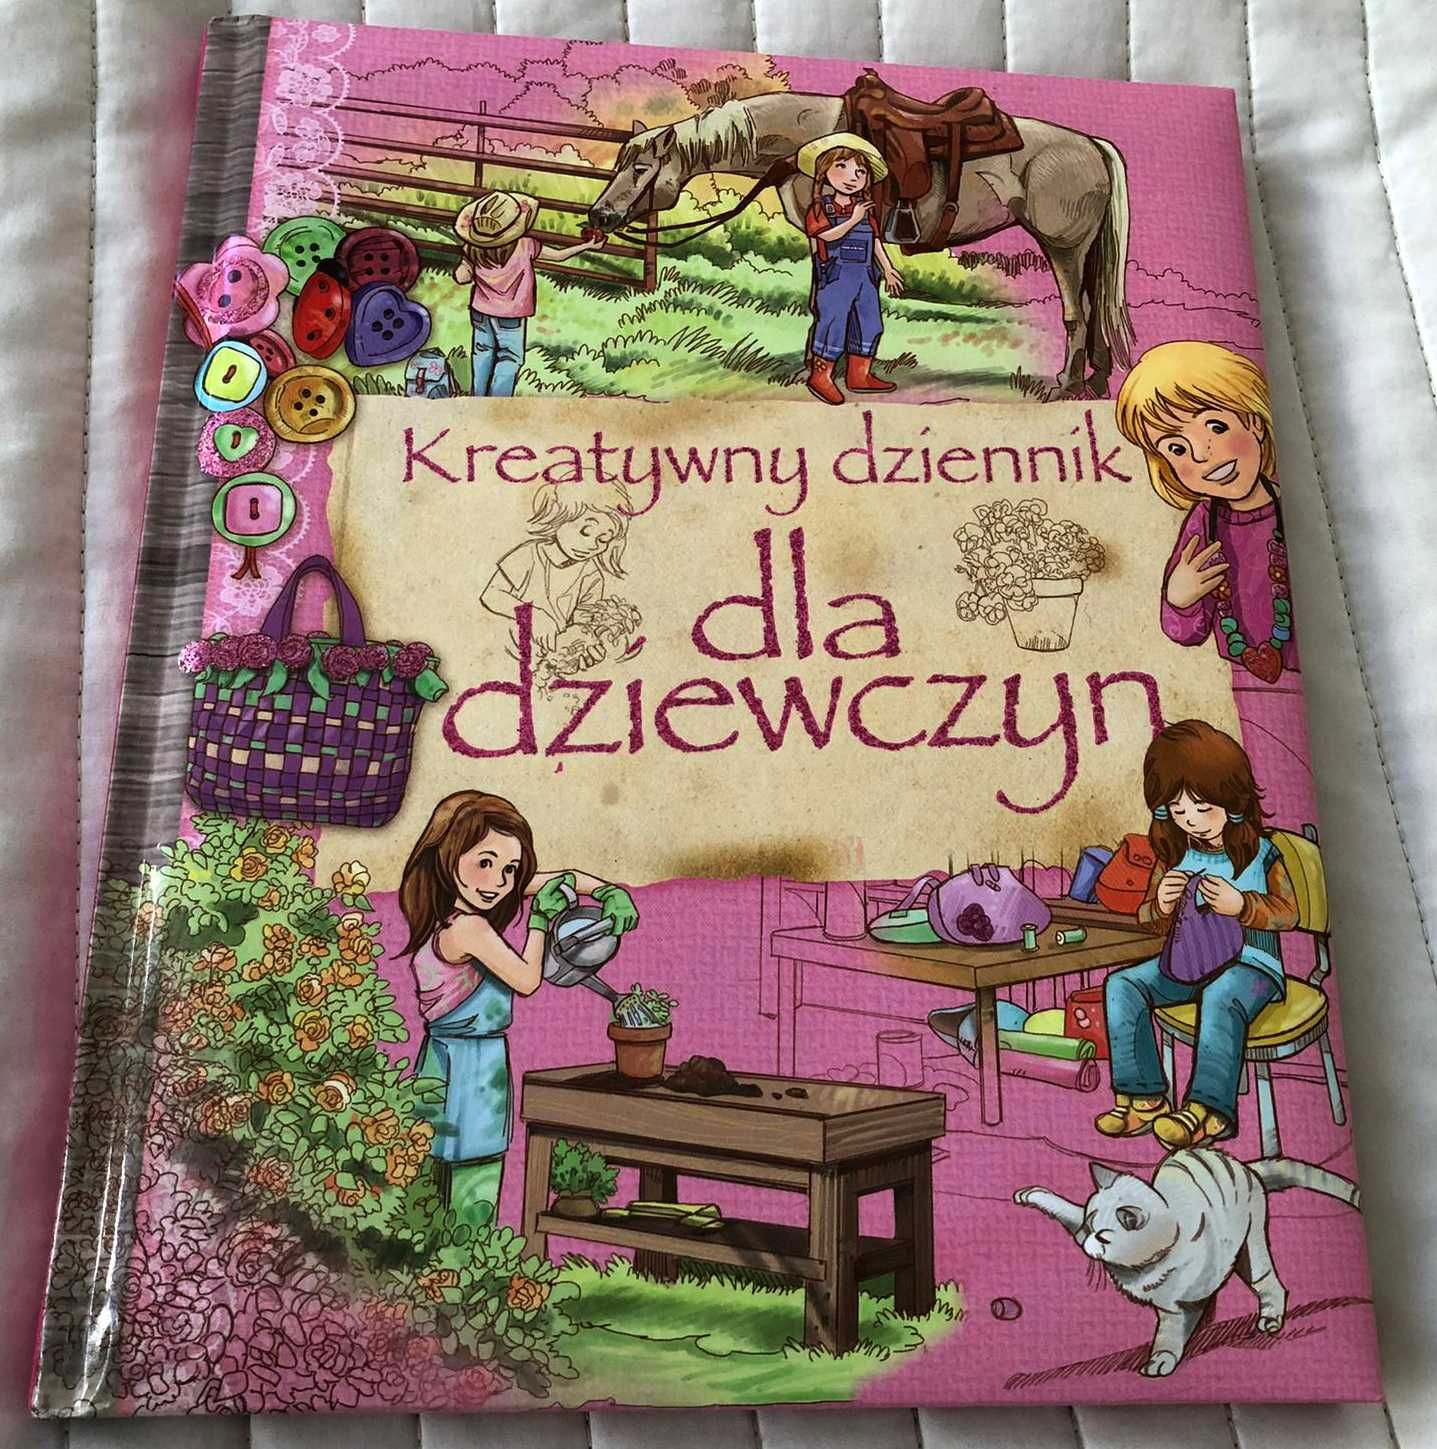 Kreatywny dziennik dla dziewczyn wydawnictwo olesiejuk